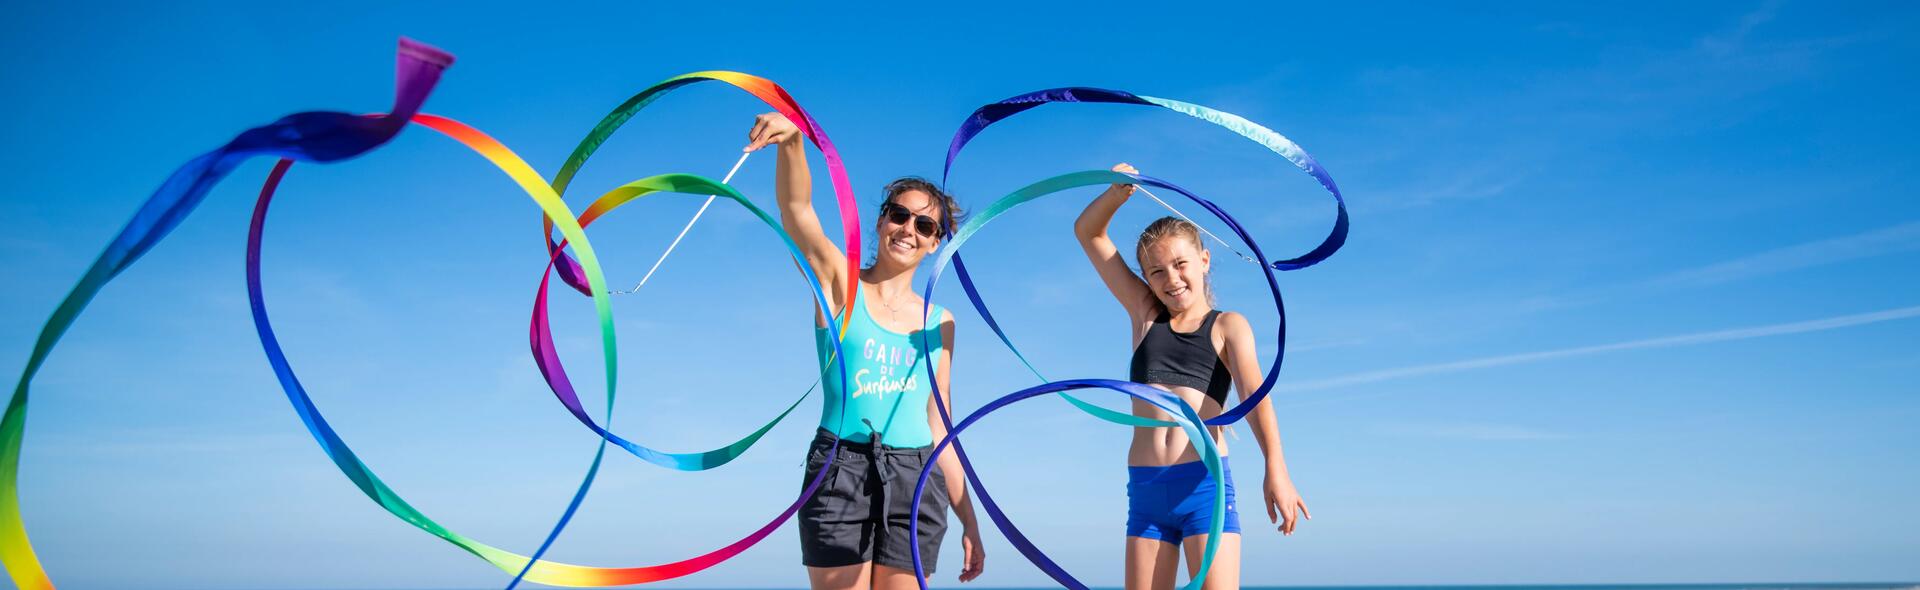 Kobiety w strojach sportowych na plaży uprawiające gimnastykę